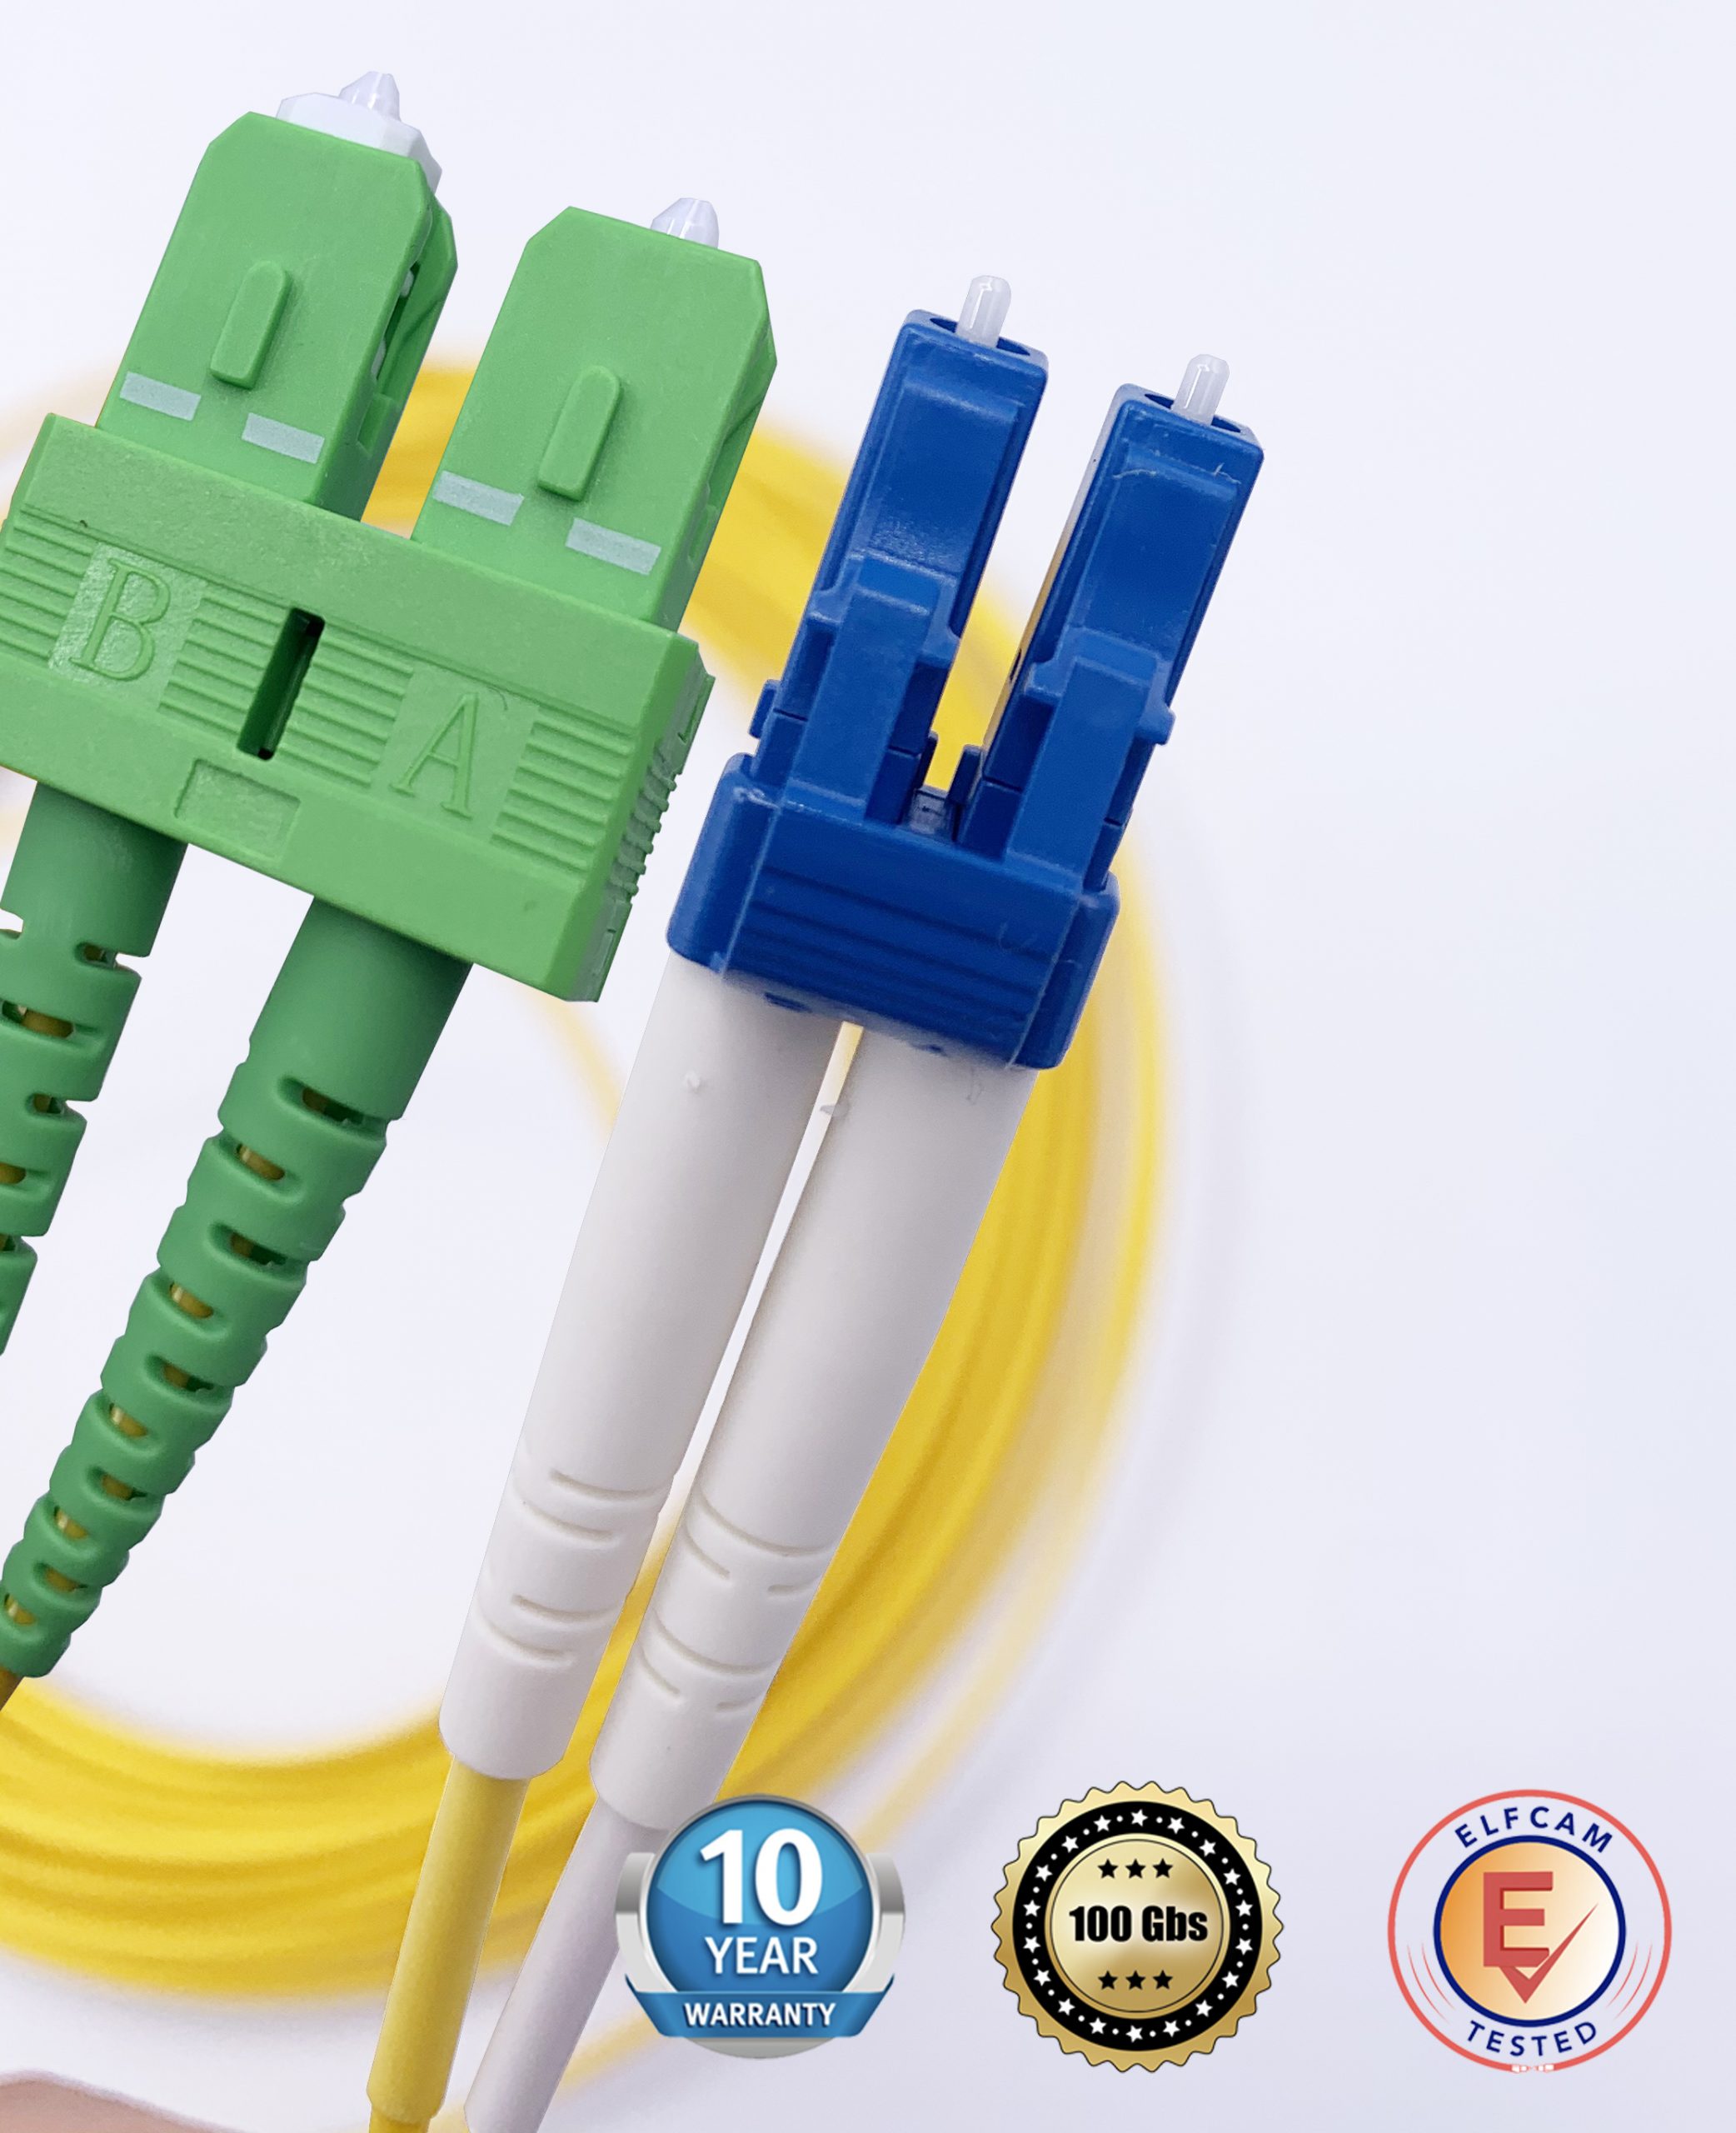 PacSatSales - Câble Internet à fibre optique – Câble fibre optique monomode  SC/APC vers SC/APC att et connecteur – Câble de raccordement à fibre optique  de rechange/rallonge de câble à fibre optique